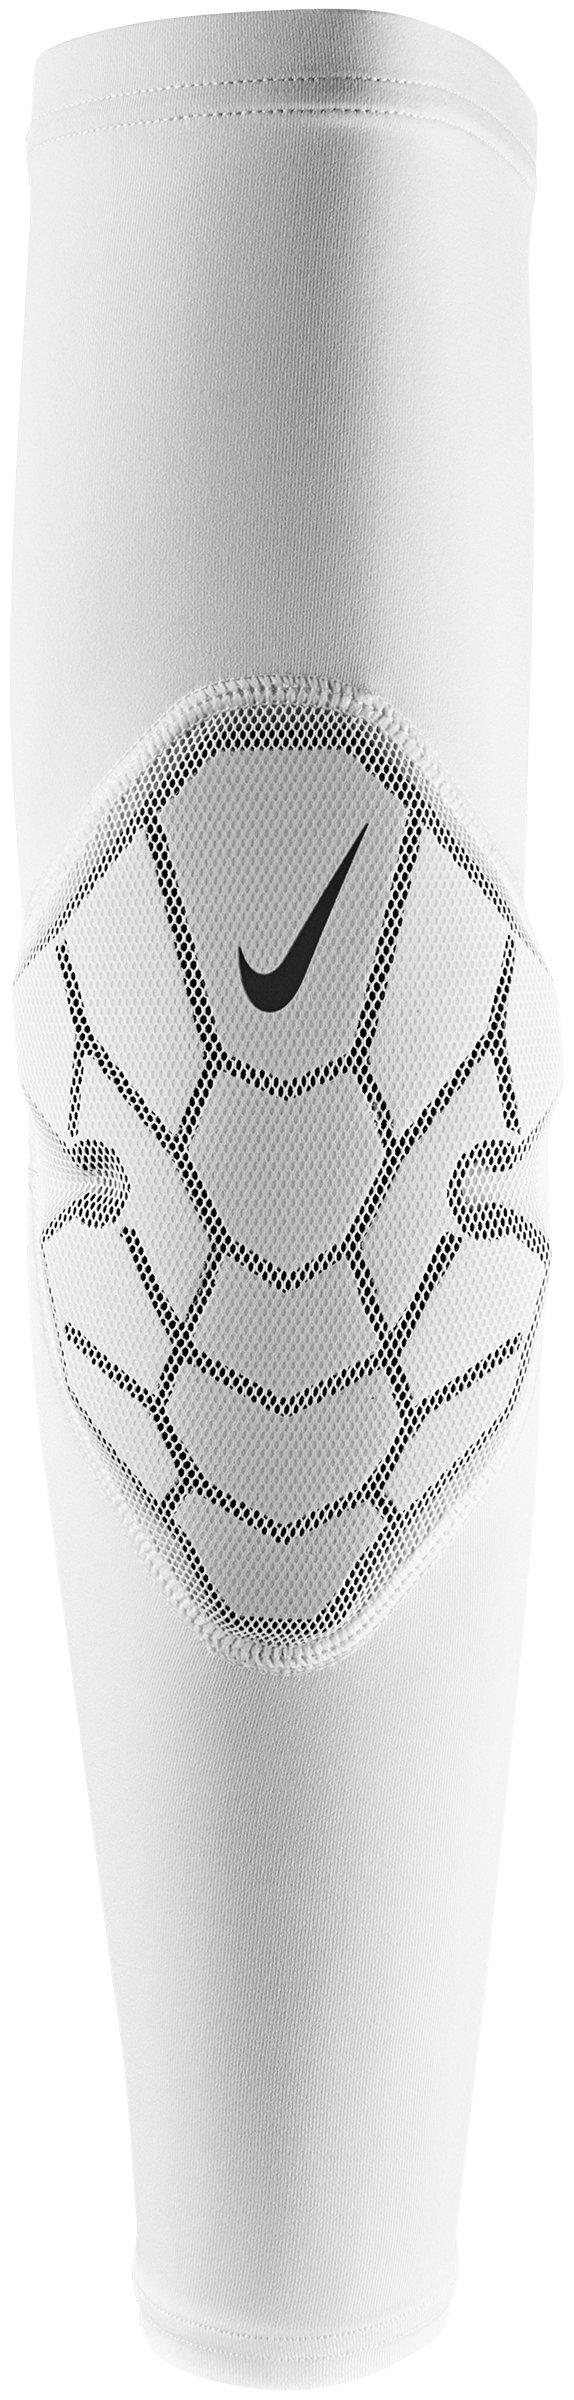 Nike Pro Hyperstrong Padded Elbow Sleeve - White - Hibbett